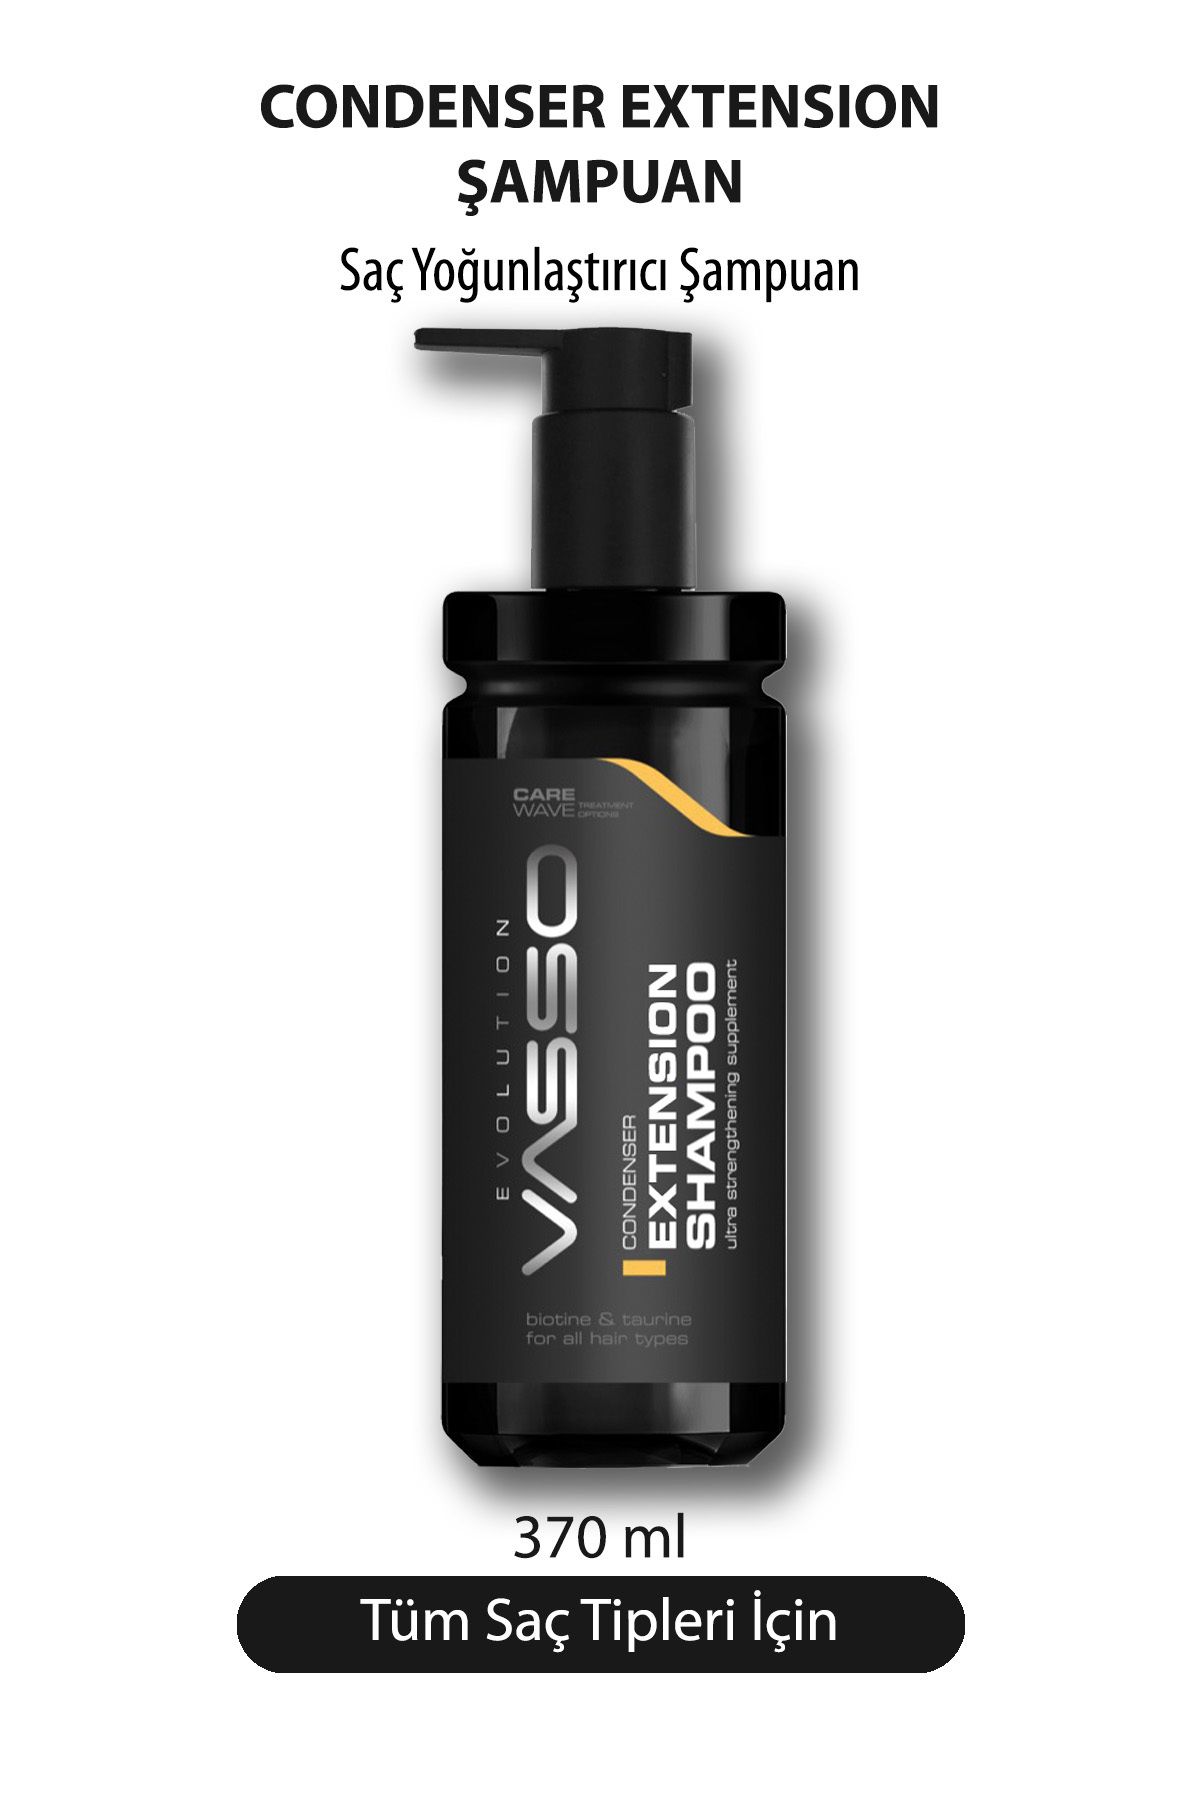 Vasso Men Saç Yoğunlaştırıcı Şampuan - Vasso Men Extension Shampoo 370 ml